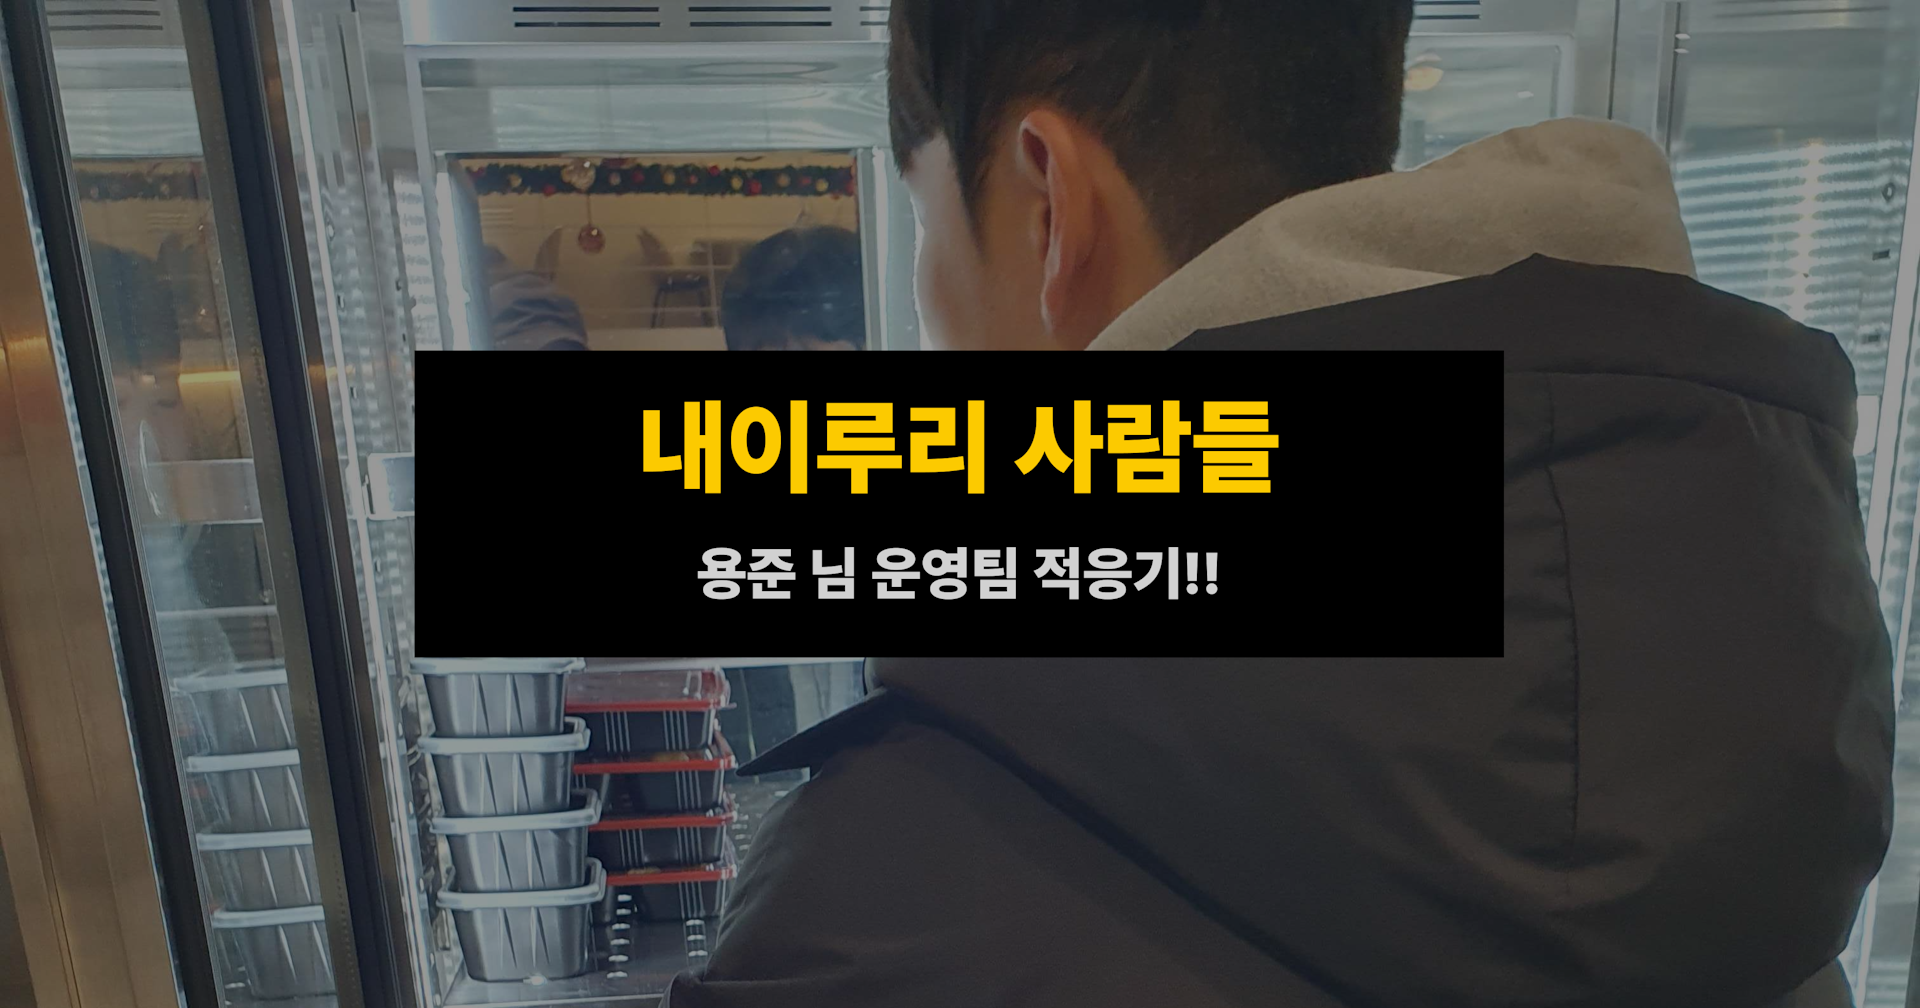 내이루리 사람들 - 용준 님 운영팀 적응기(2)